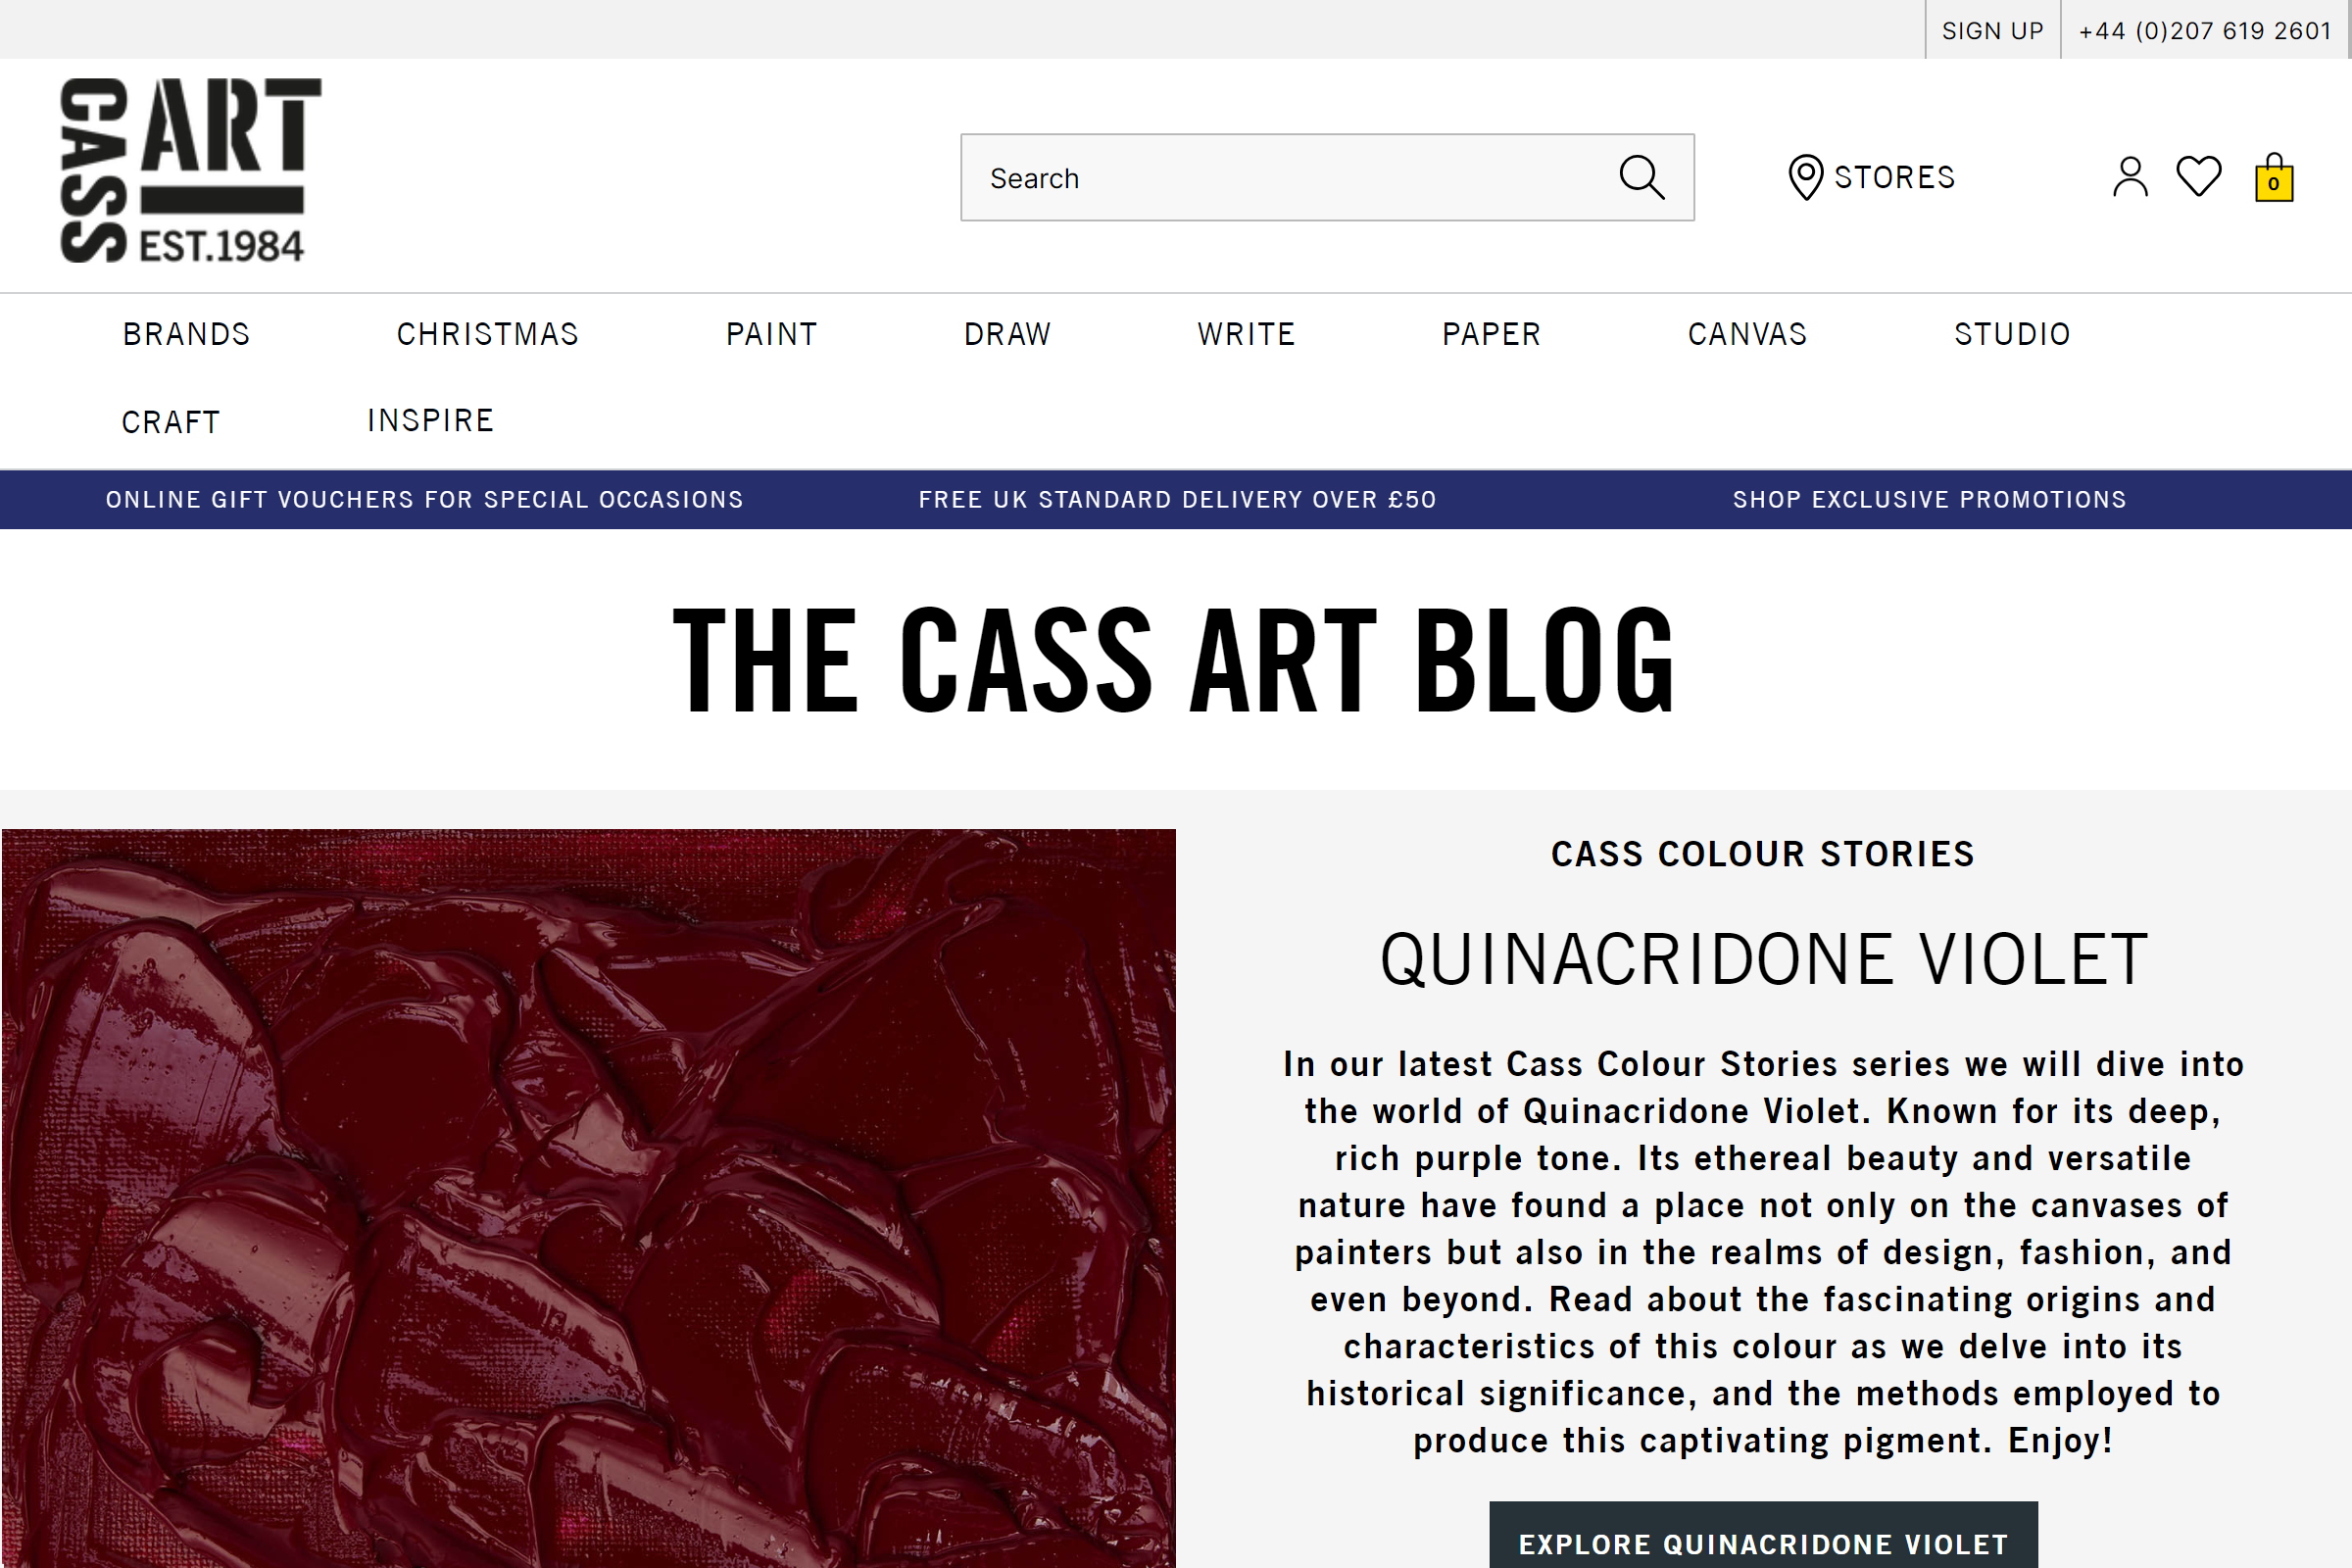 The Cass Art Blog art blog